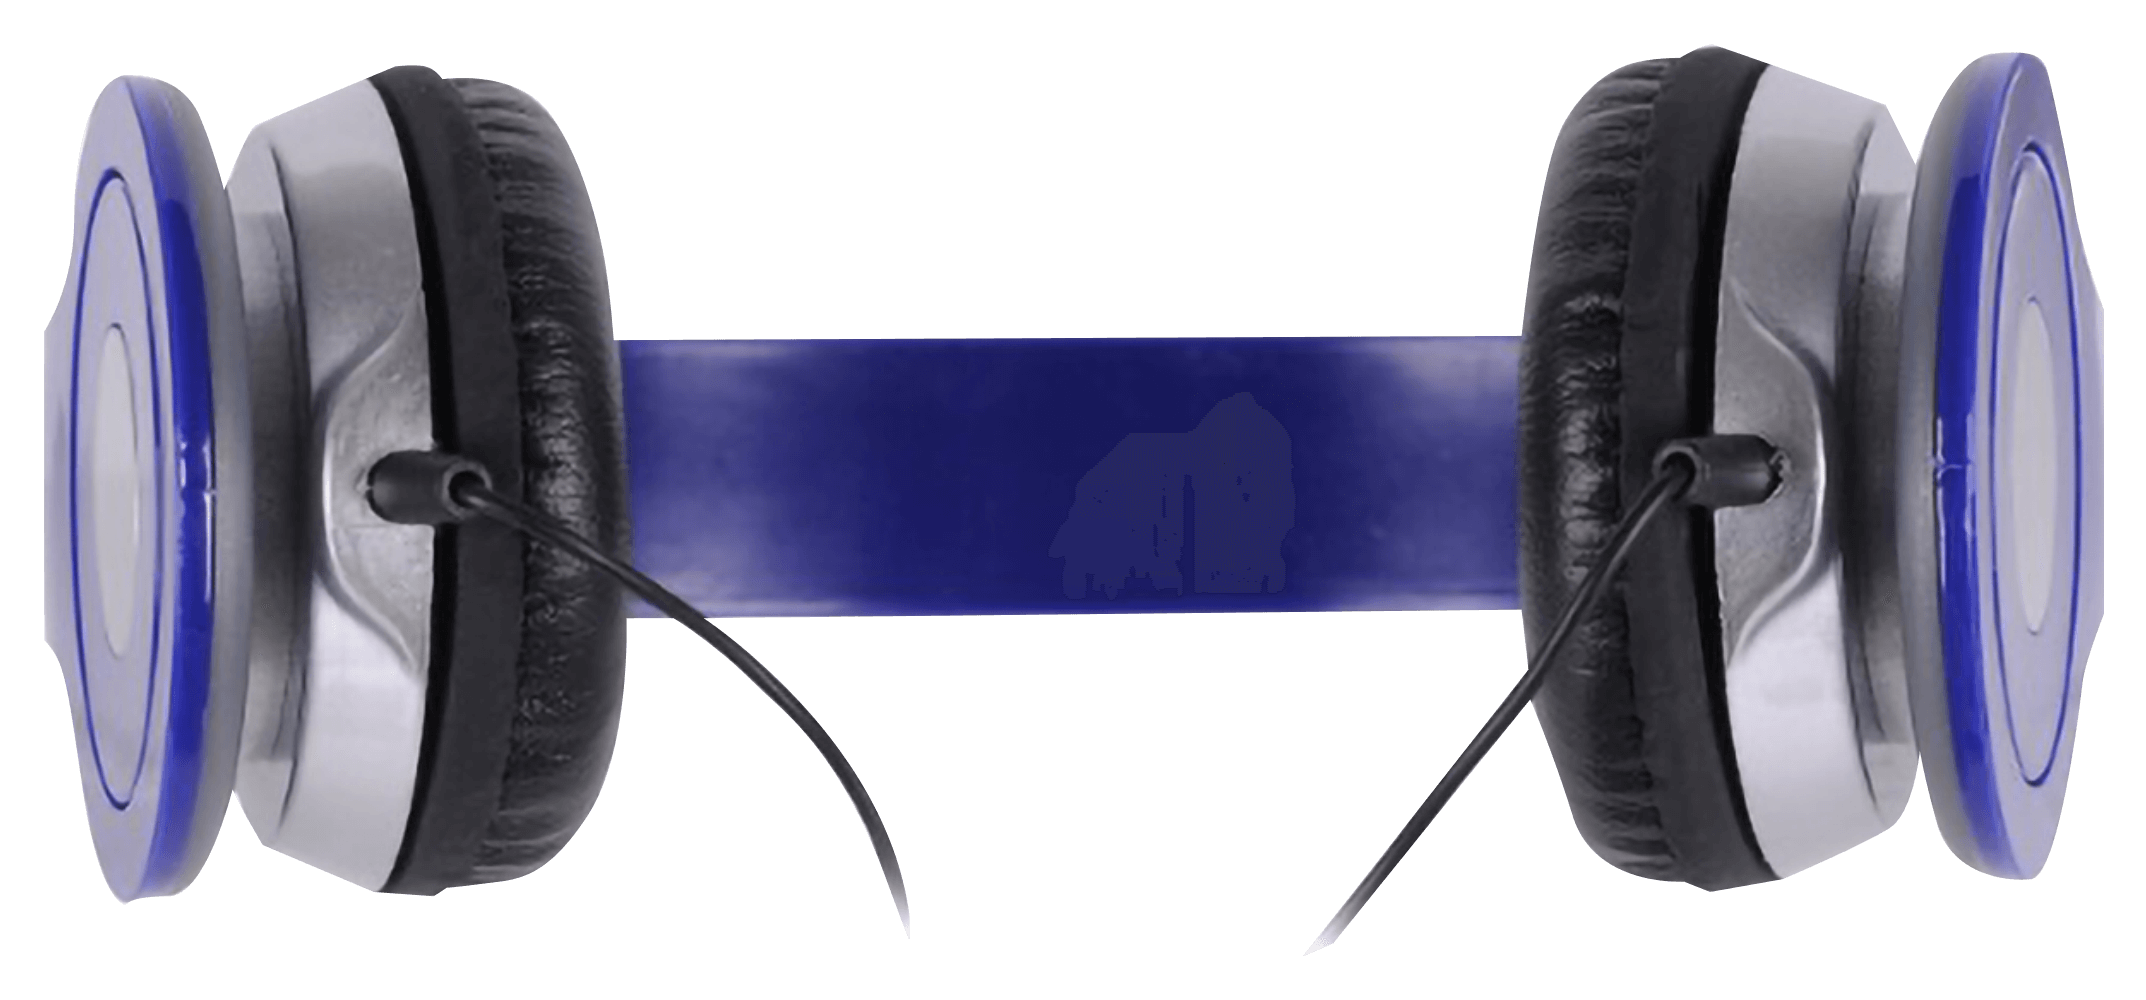 LG K8 (K350n) vezetékes fejhallgató Rebeltec City kék